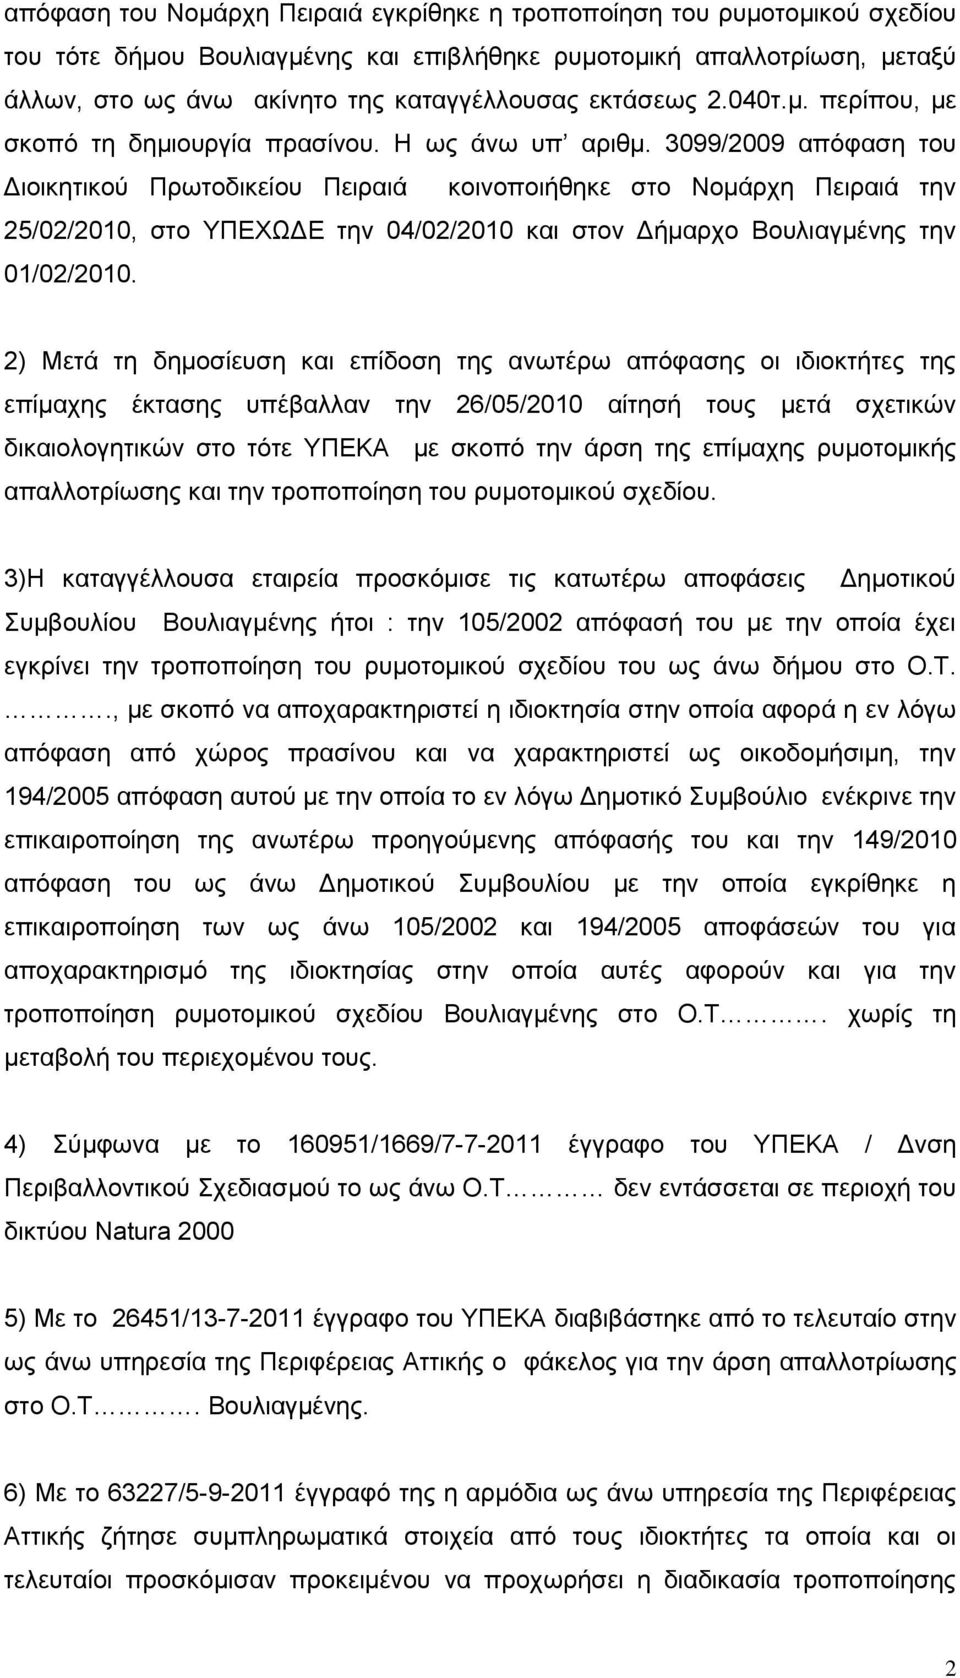 3099/2009 απόφαση του Διοικητικού Πρωτοδικείου Πειραιά κοινοποιήθηκε στο Νομάρχη Πειραιά την 25/02/2010, στο ΥΠΕΧΩΔΕ την 04/02/2010 και στον Δήμαρχο Βουλιαγμένης την 01/02/2010.